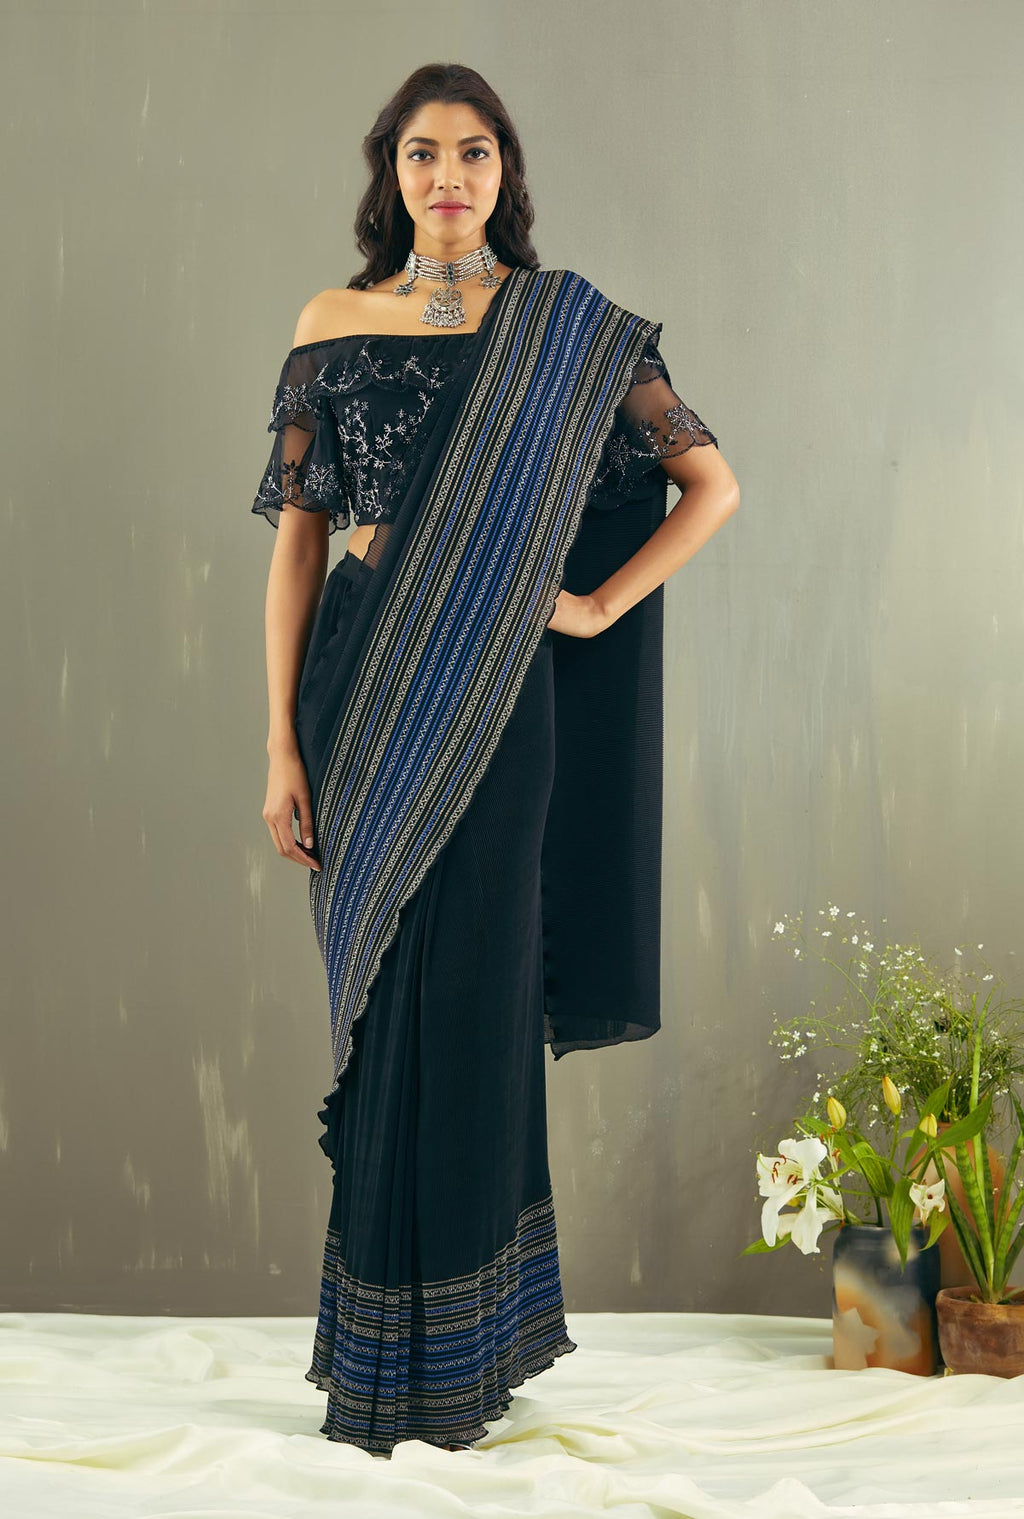 Ready-Made off shoulder blouse saree sari / indian skirt dress - Yellow -  Unworn | eBay